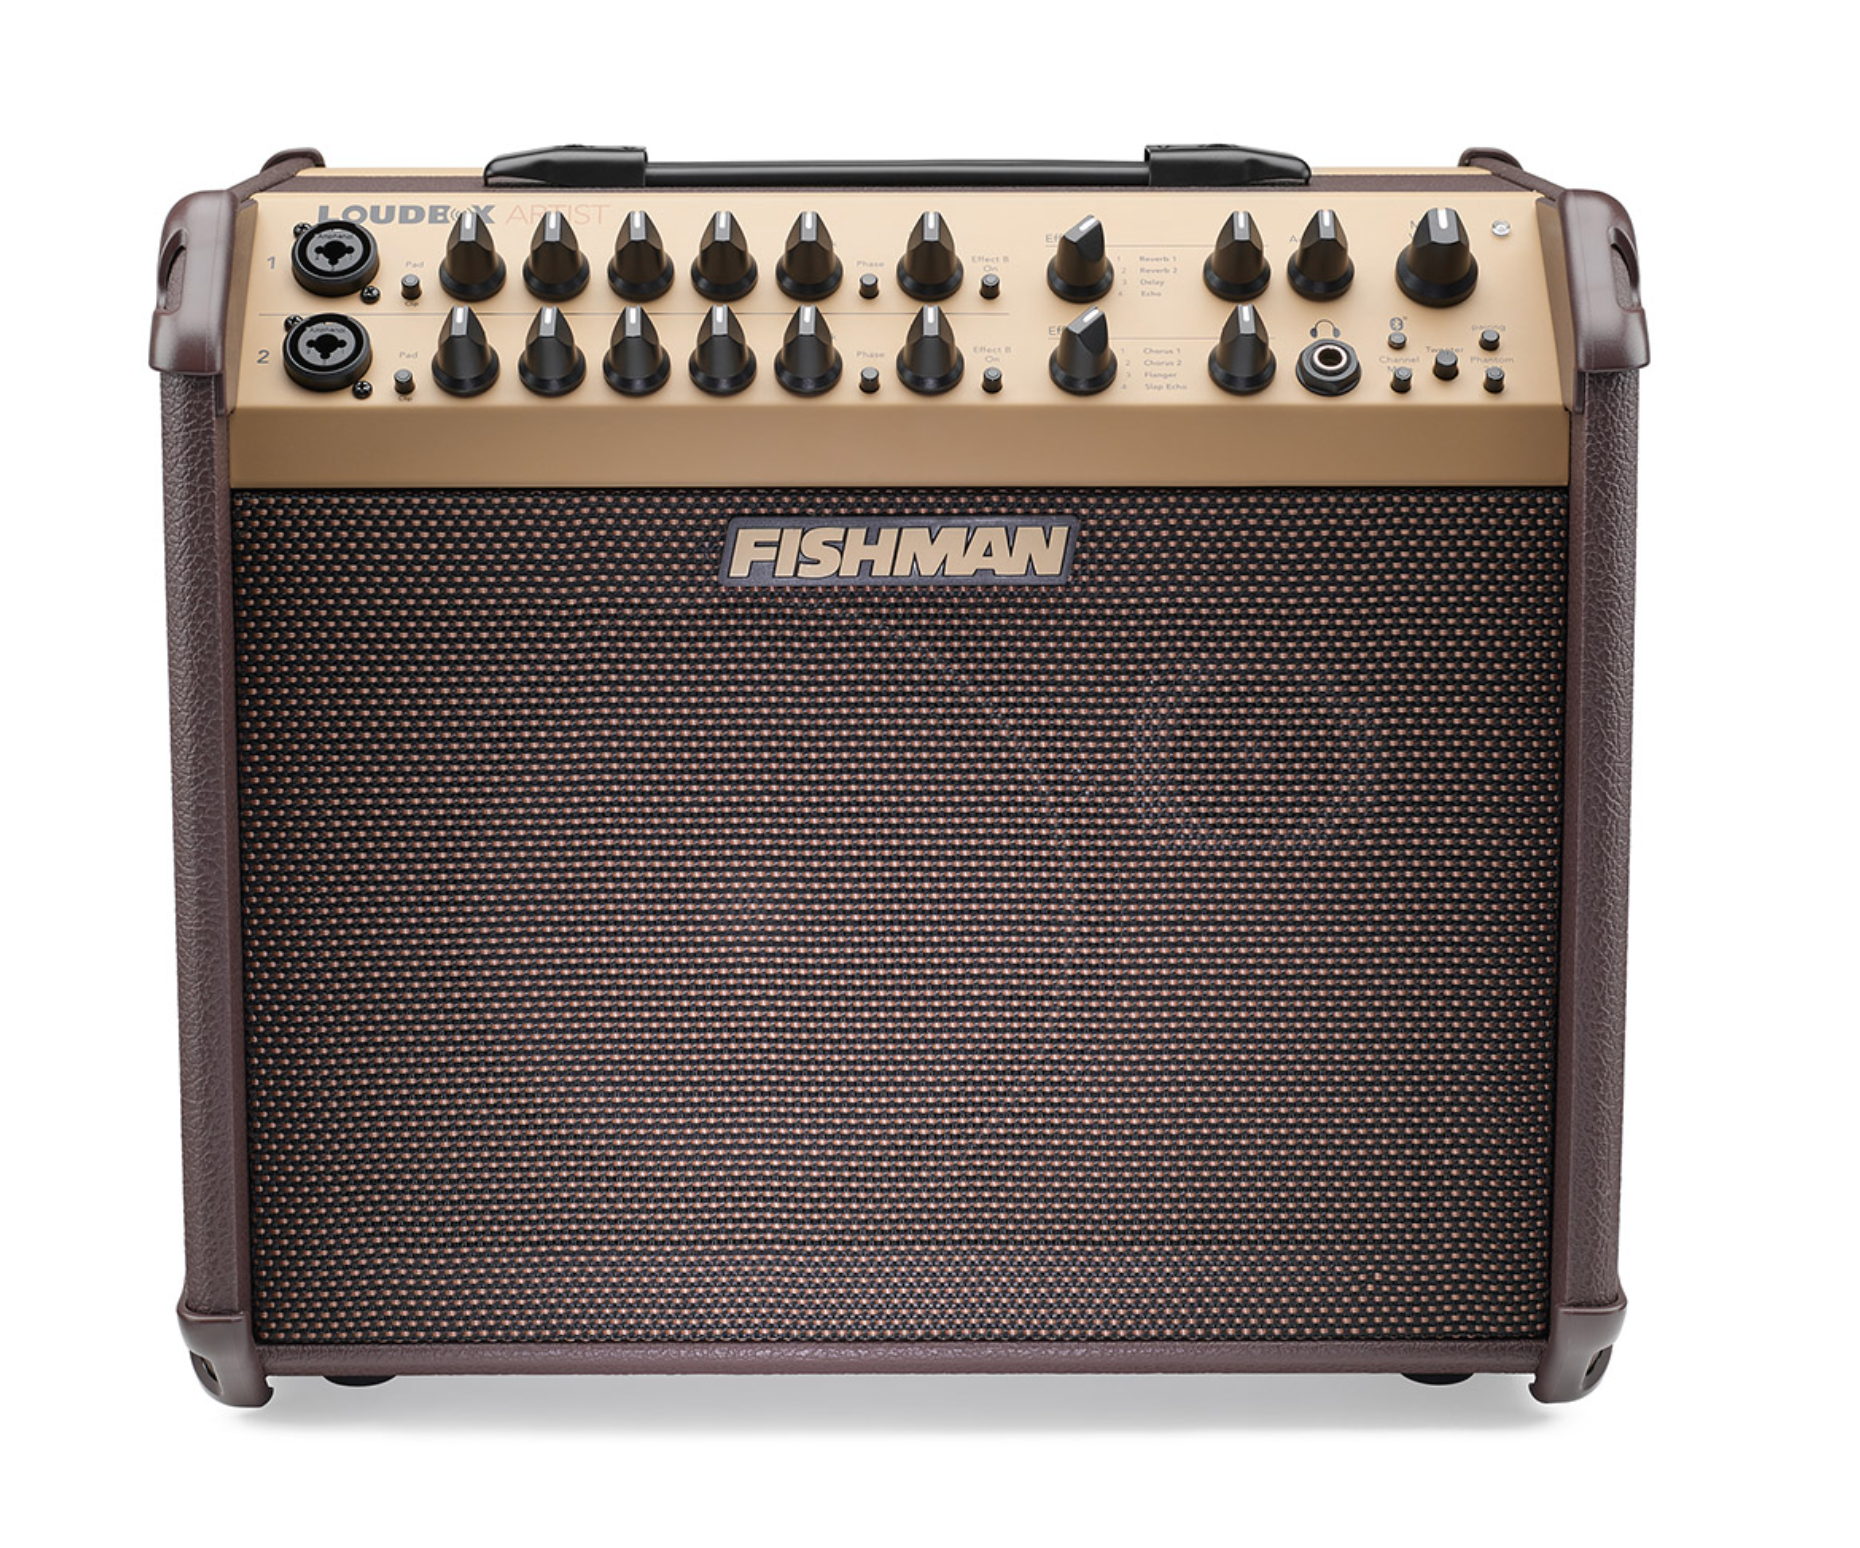 Fishman Loudbox Artist - 120 watts